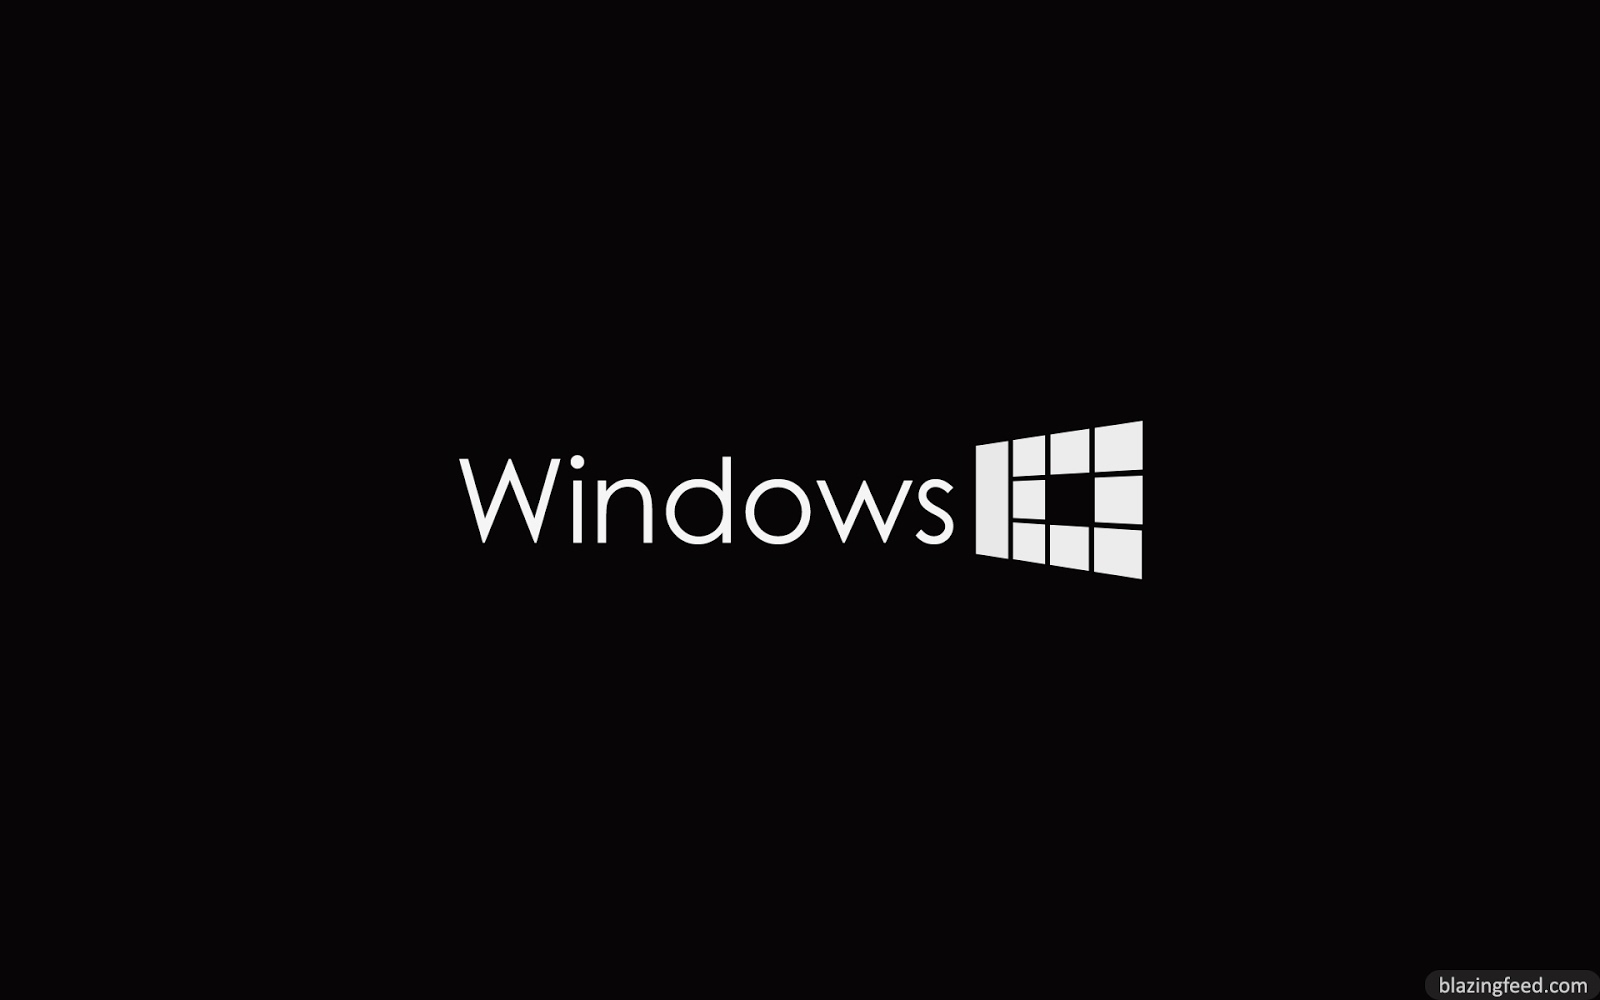 Download Wallpaper Windows 10 Keren Gratis